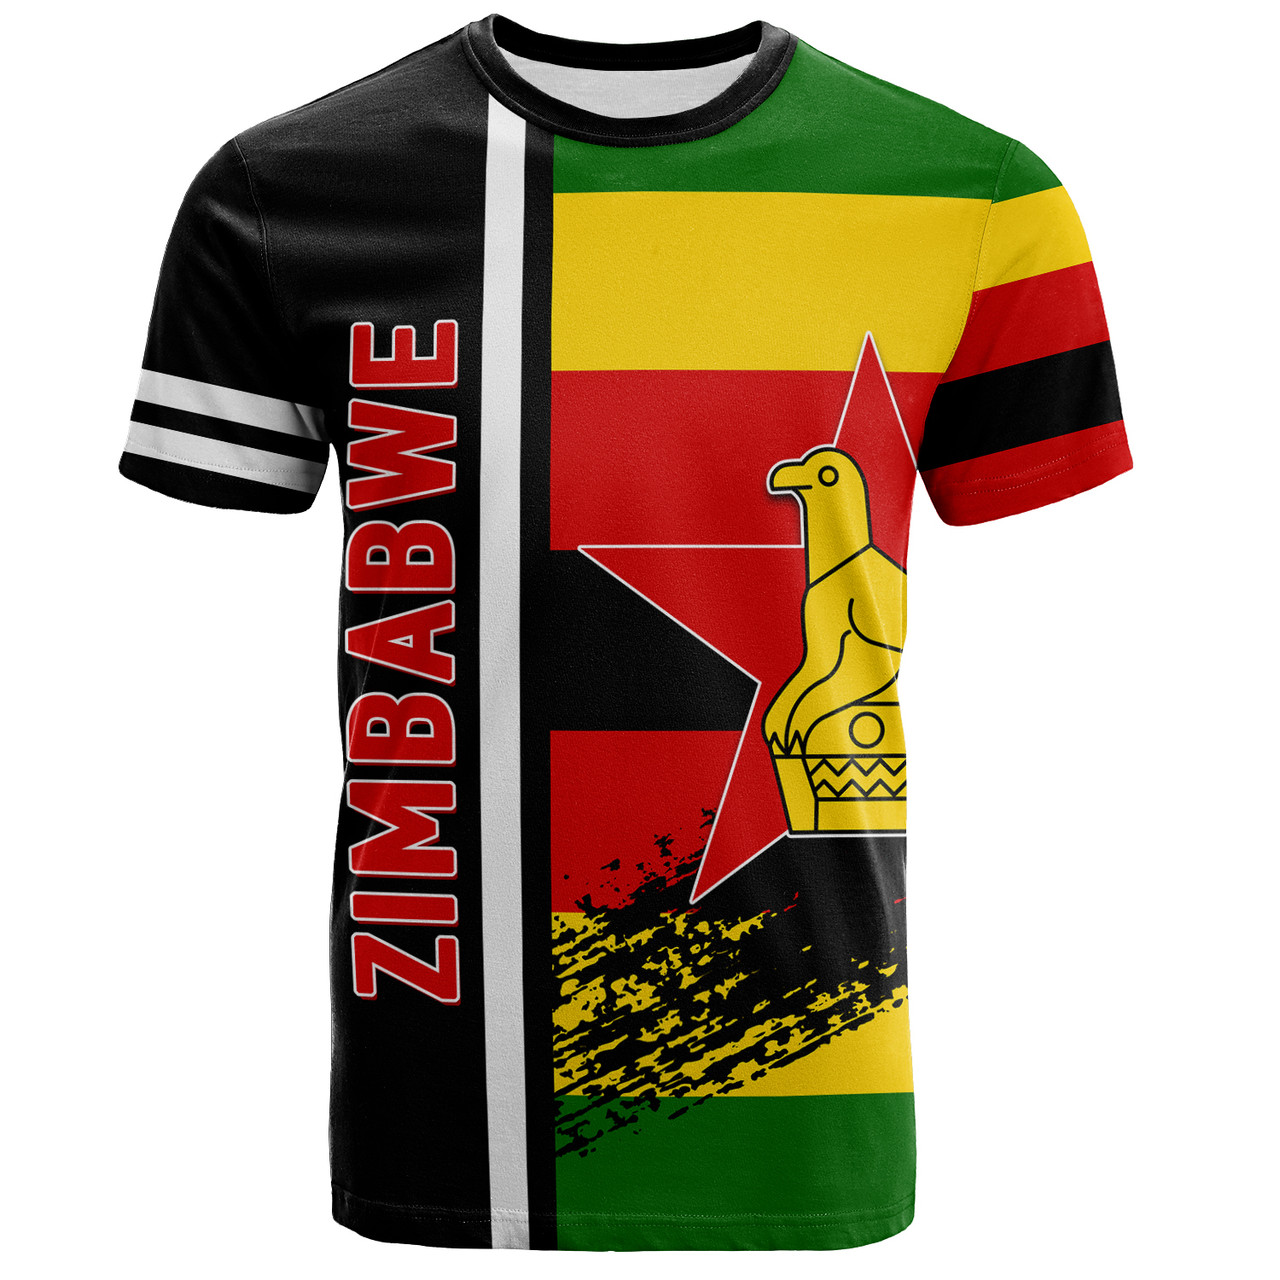 Zimbabwe T-Shirt - Coat Of Arms Flag Style